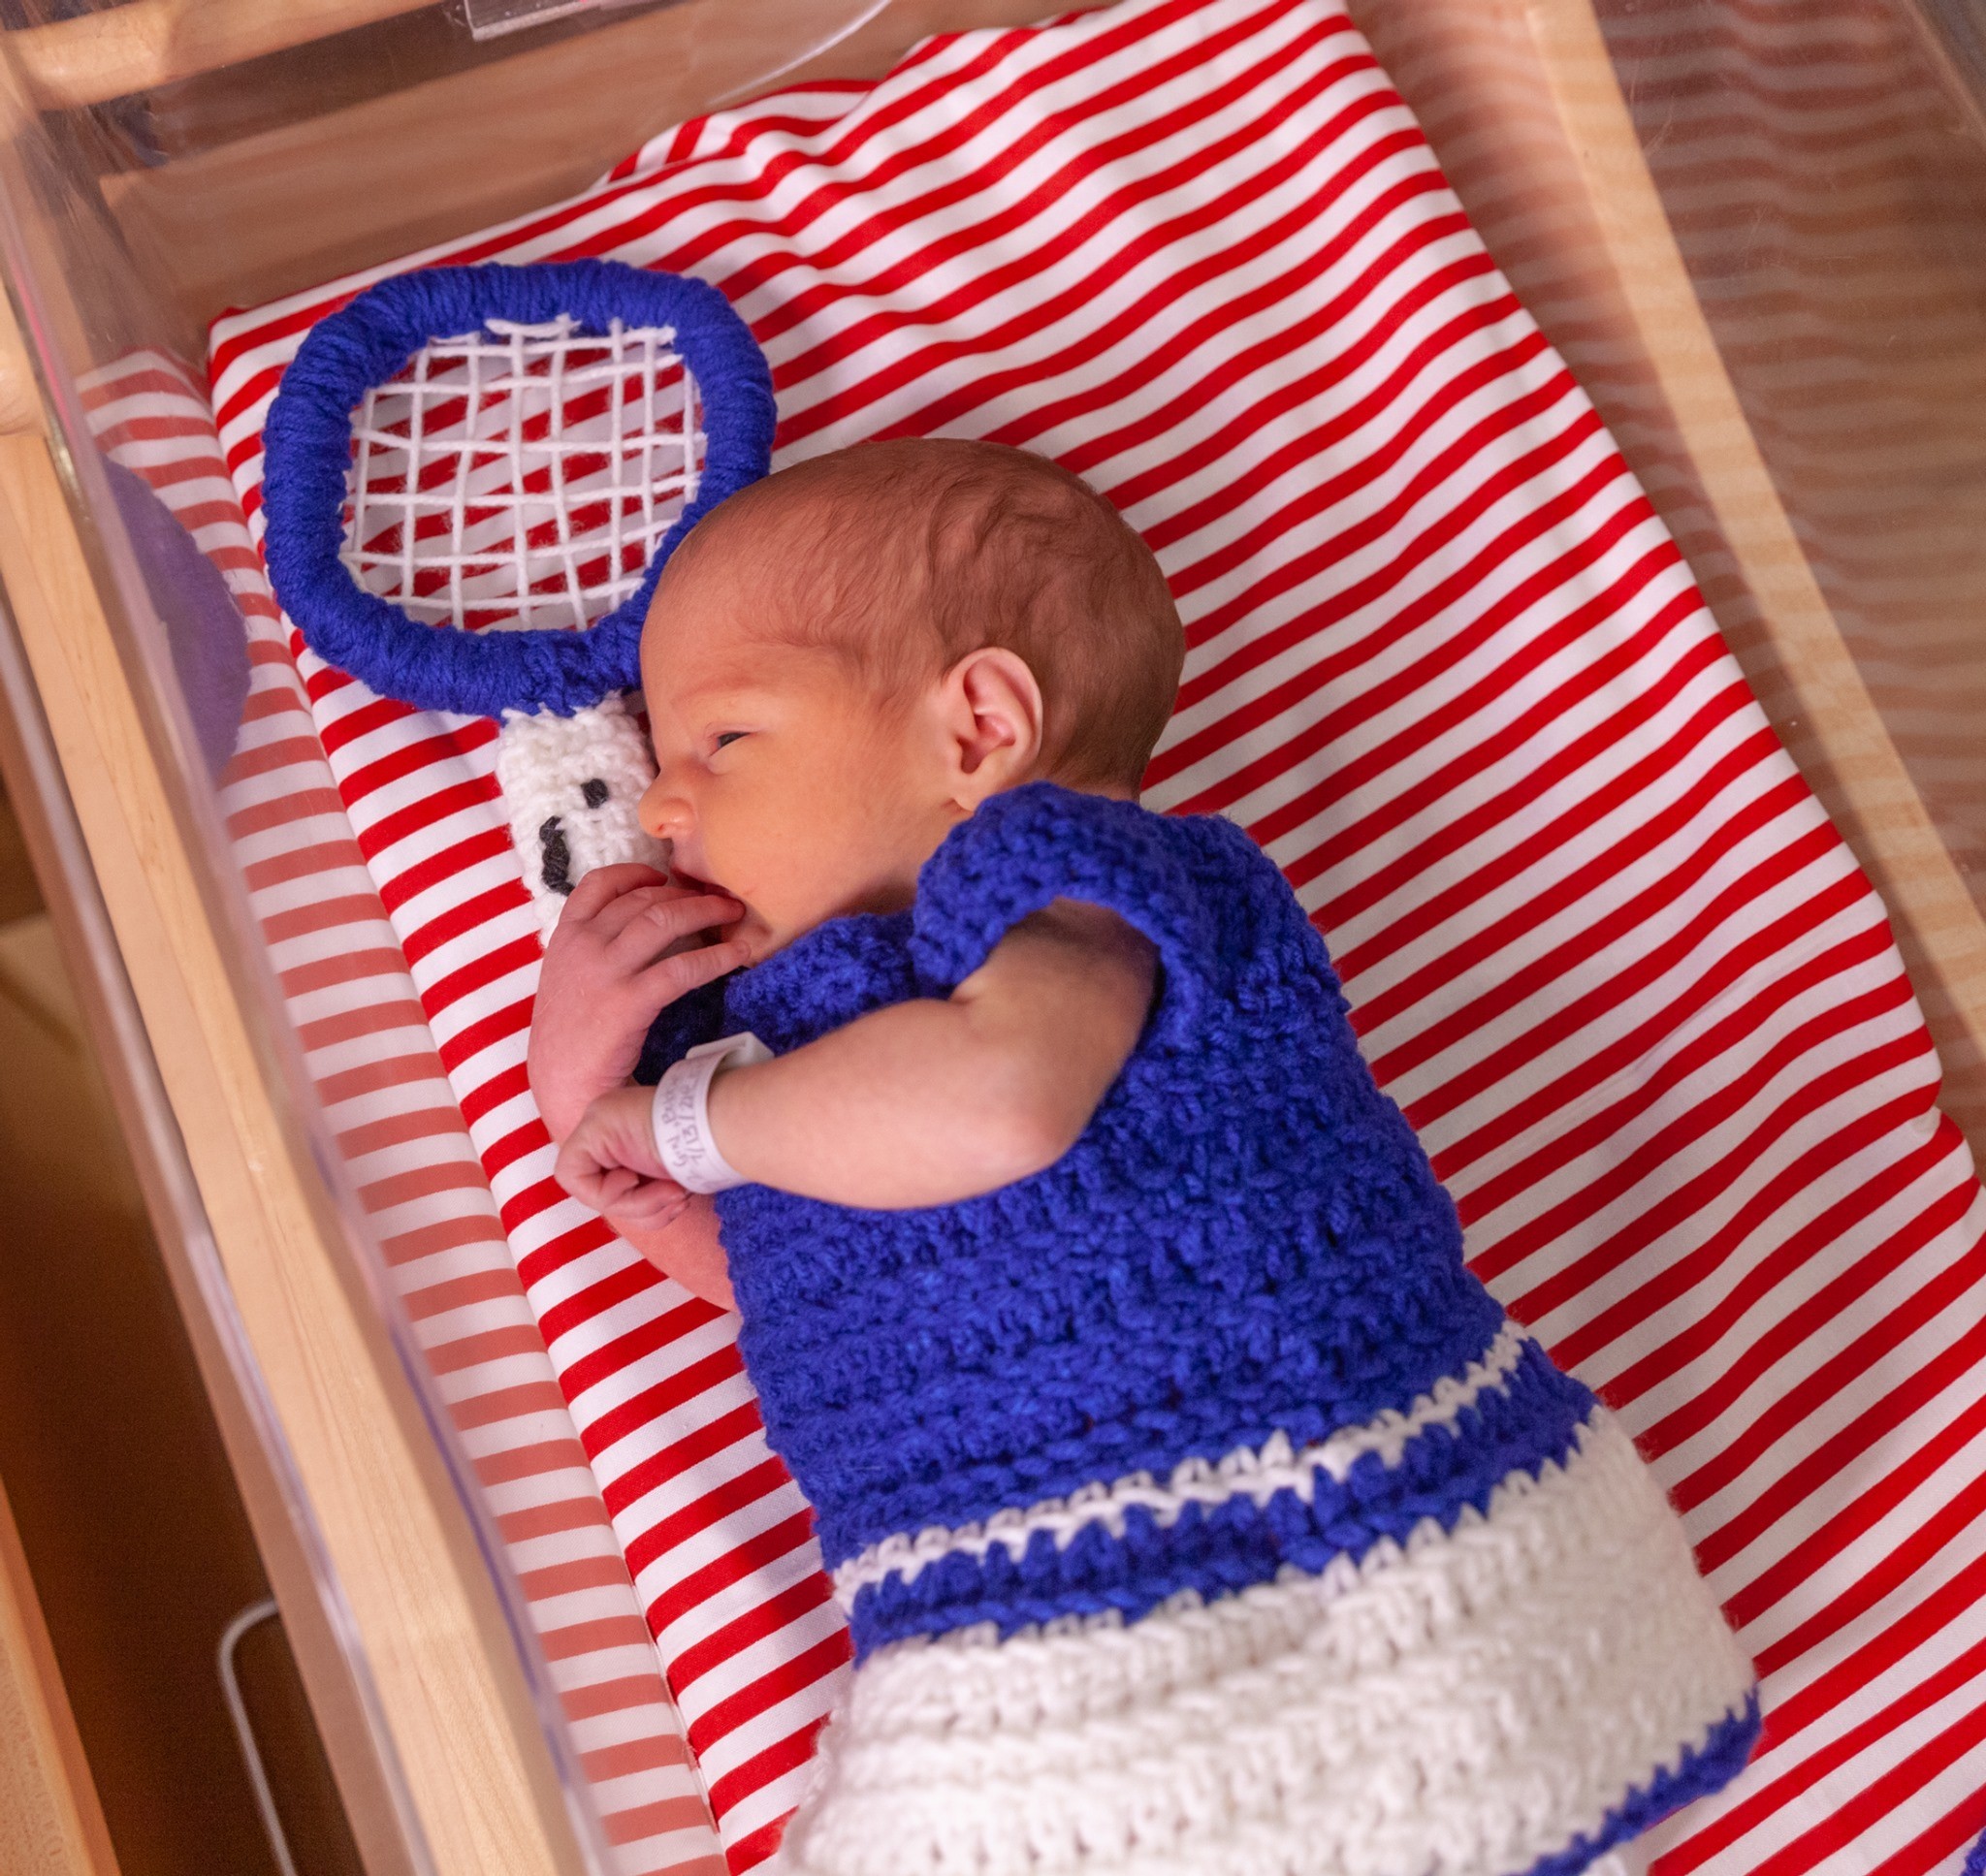 Os bebês foram vestidos com roupinha de crochê, imitando os uniformes dos atletas olímpicos (Foto: Reprodução/Facebook)